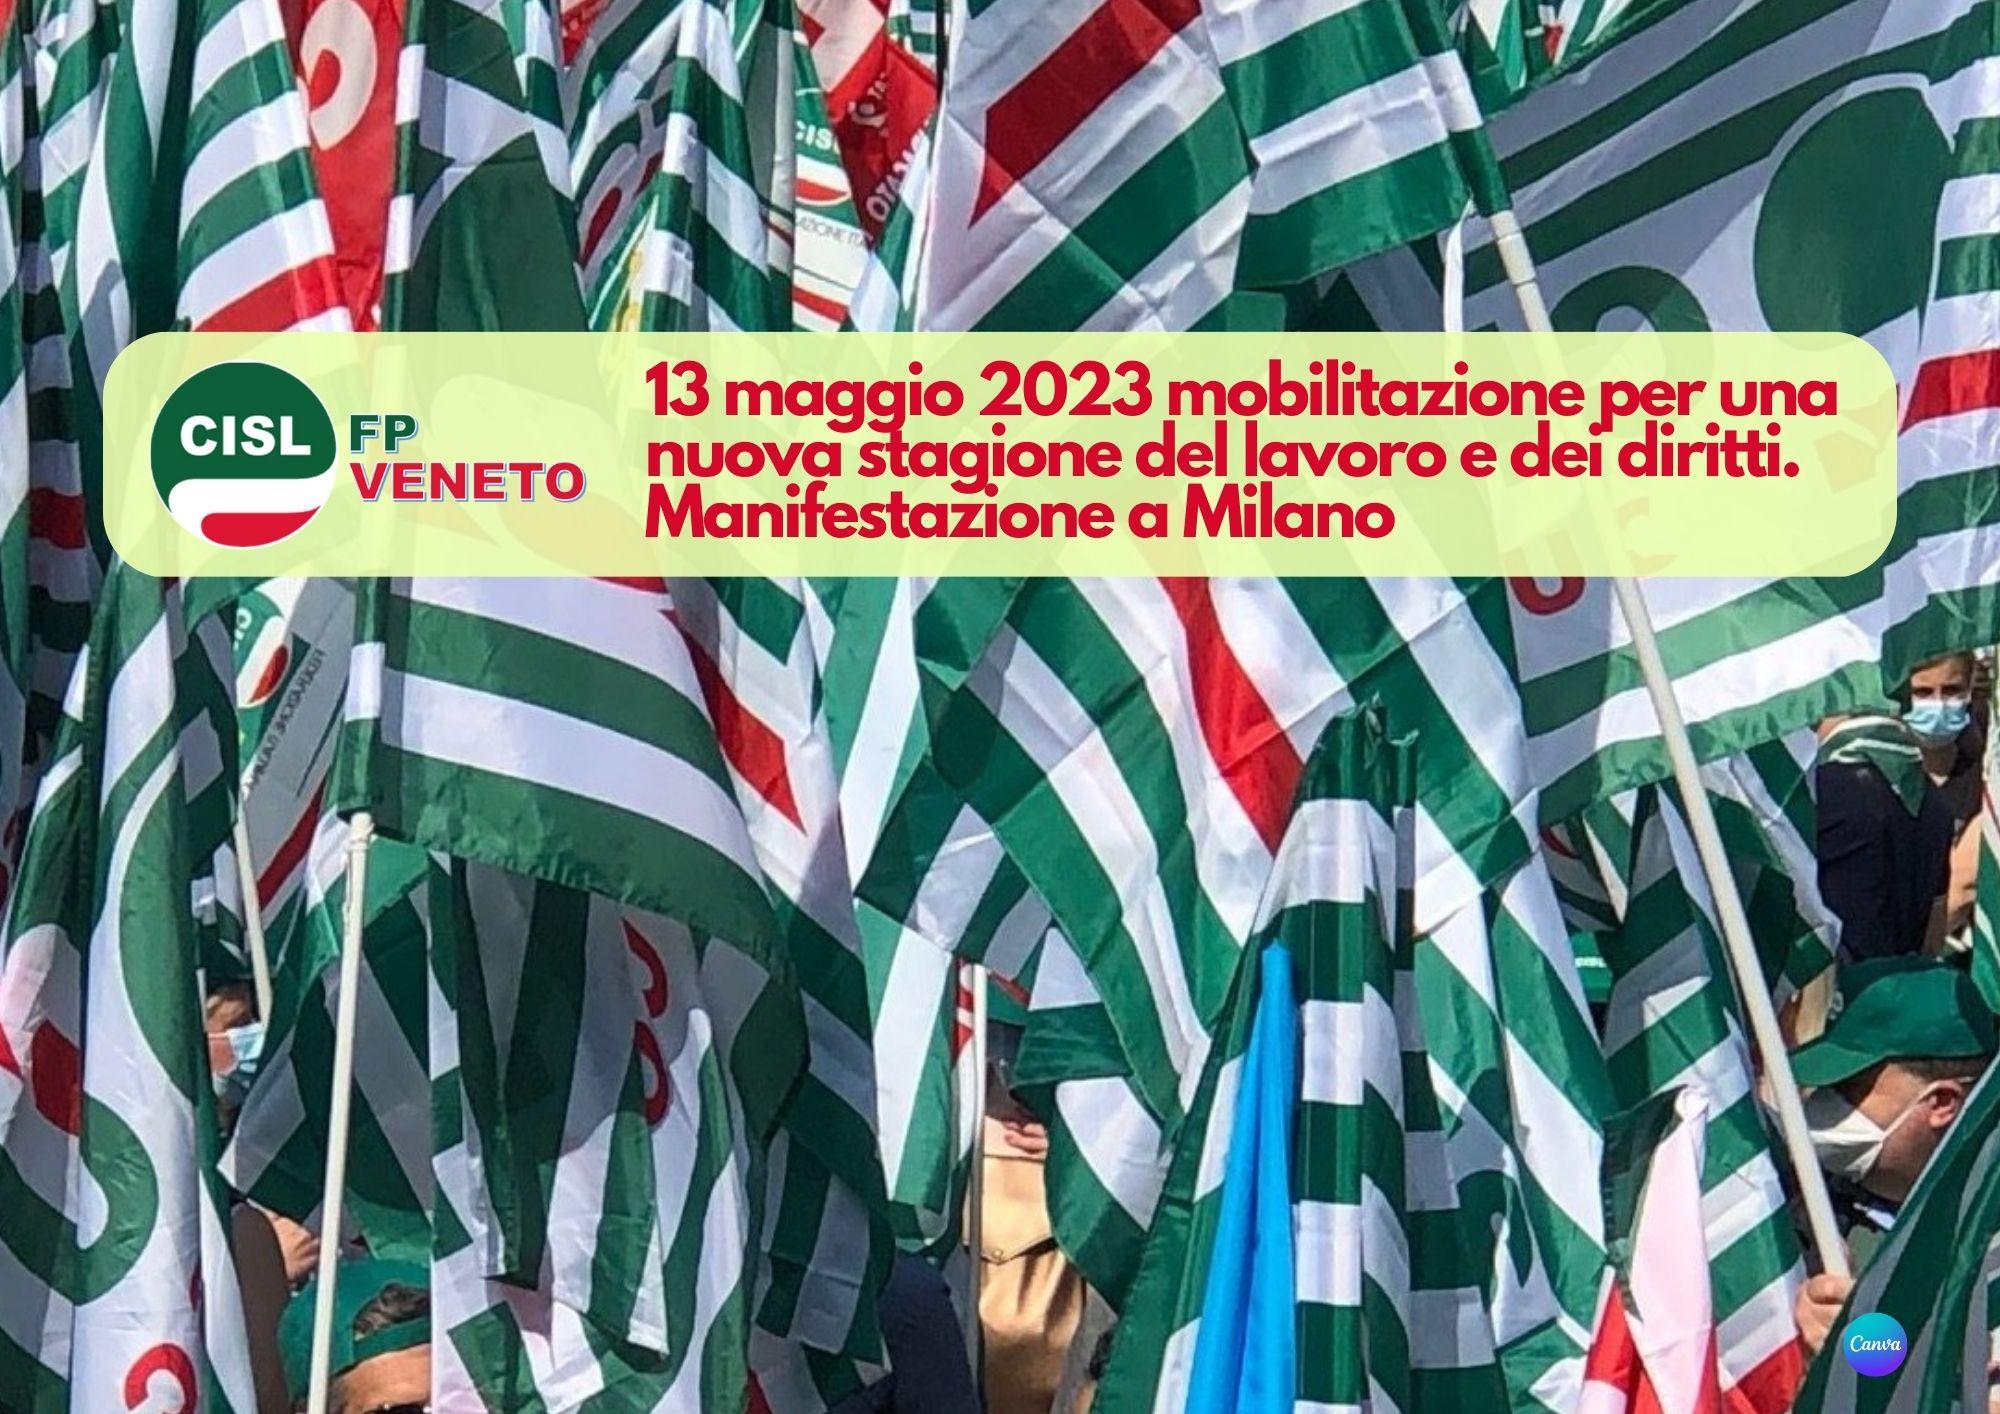 CISL FP Veneto. Manifestazione a Milano 13 maggio 2023 per una nuova stagione del lavoro e dei diritti